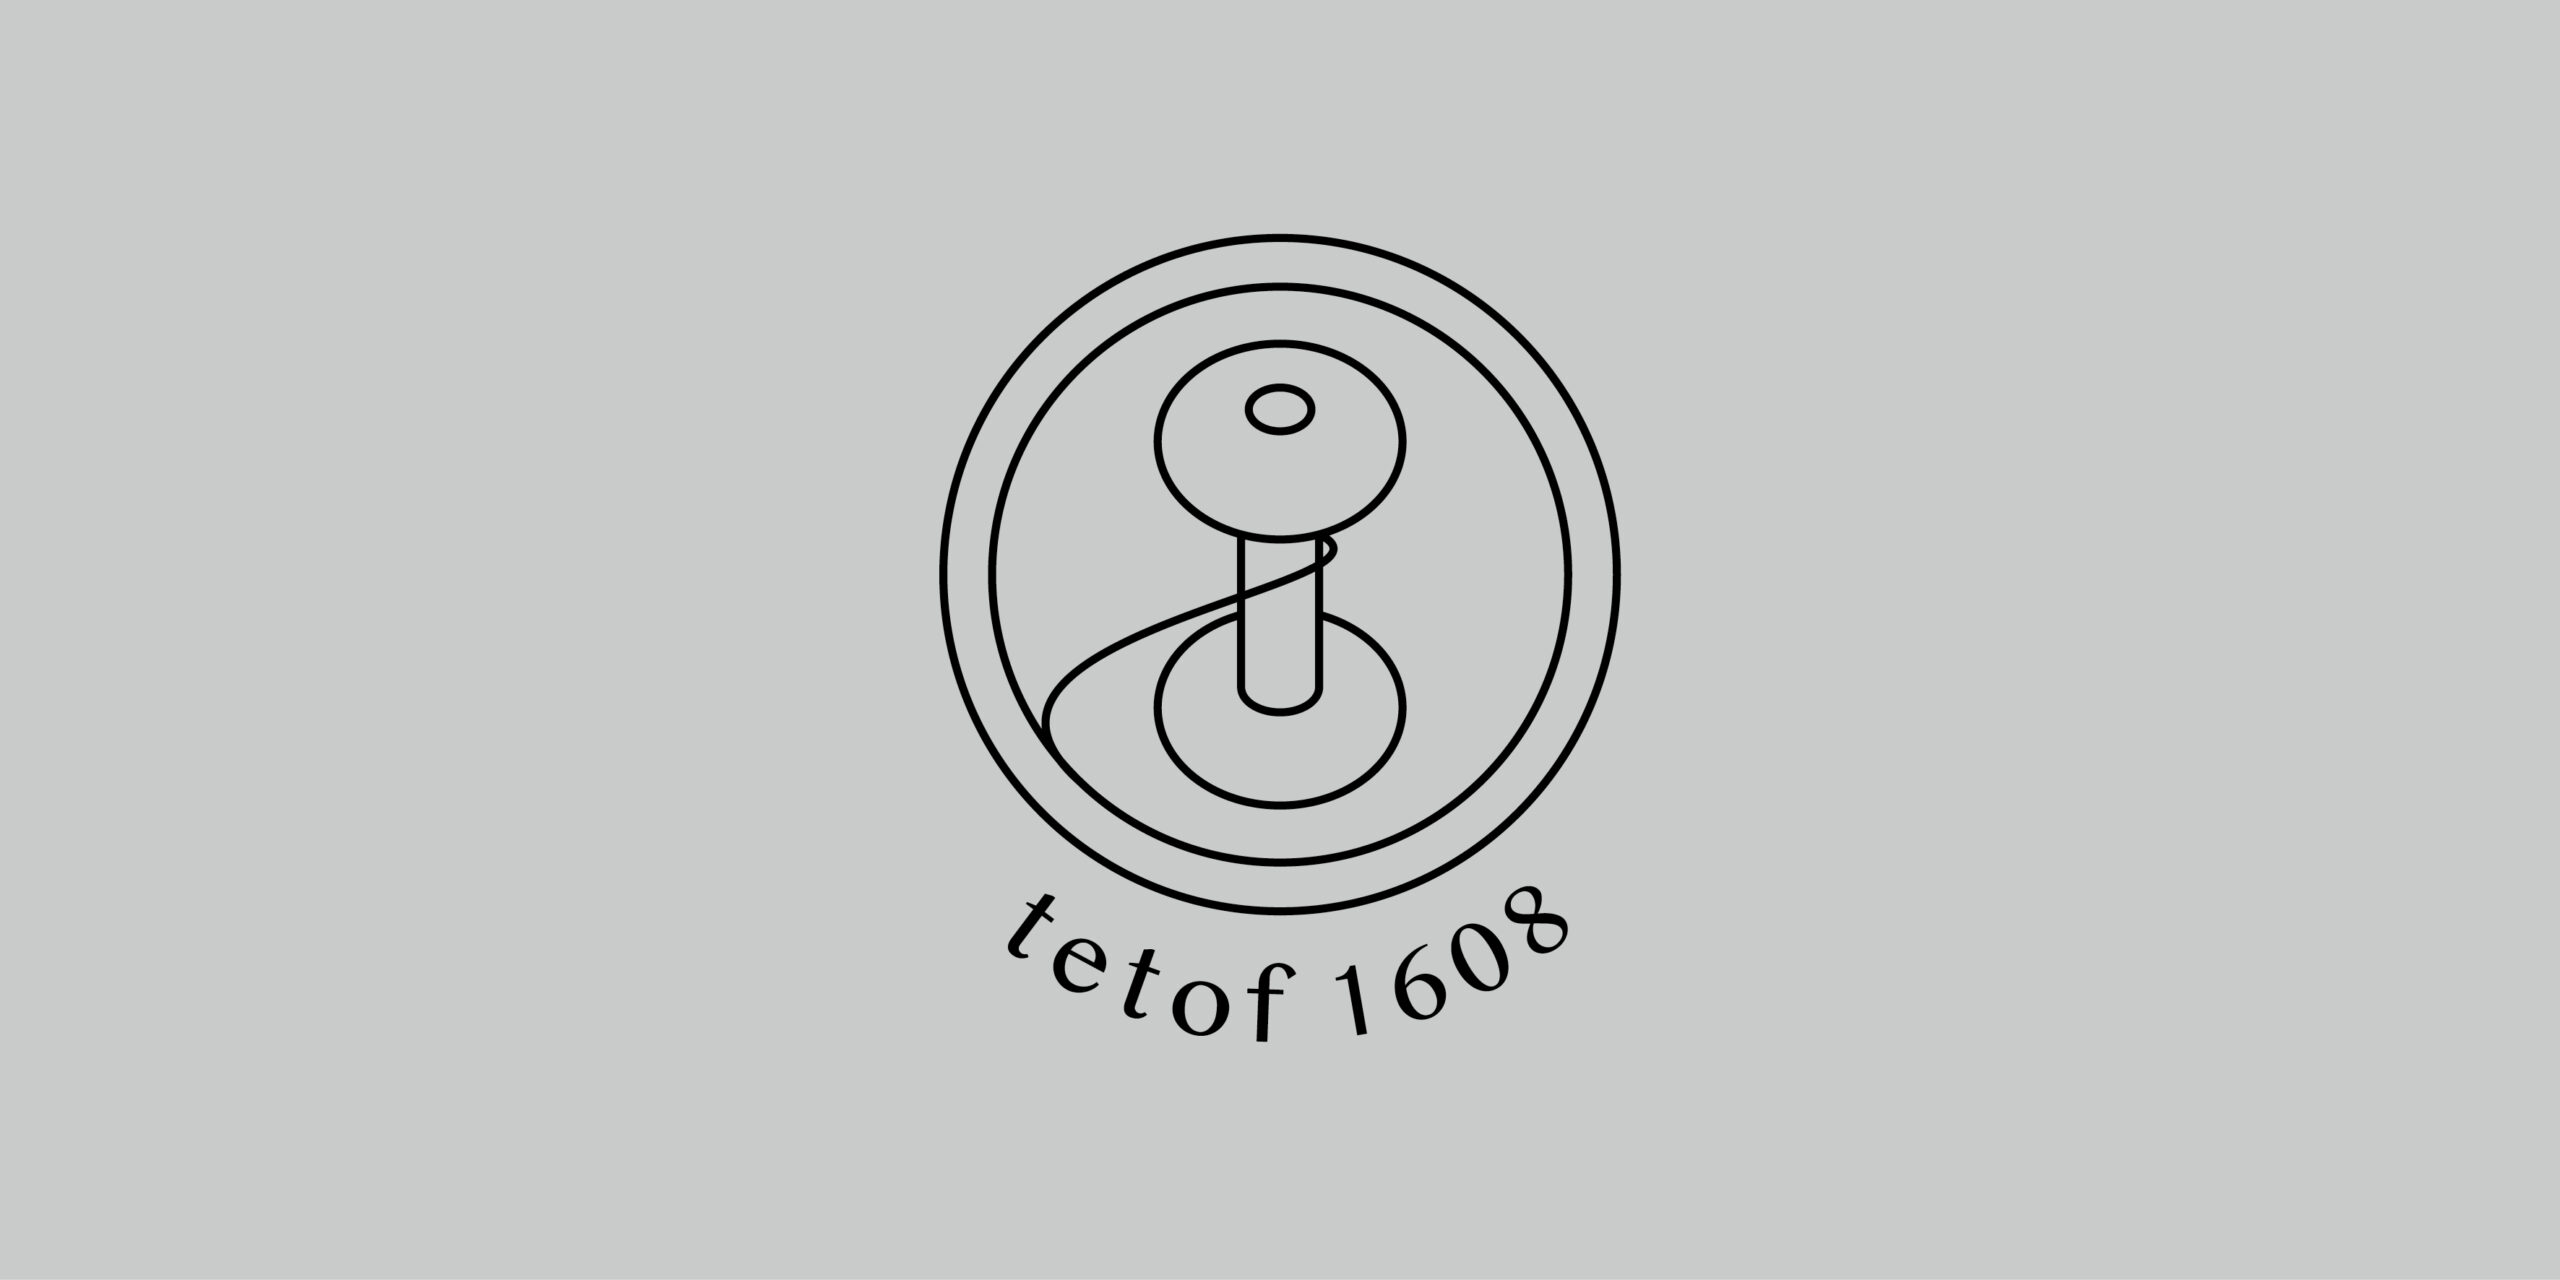 tetof1608